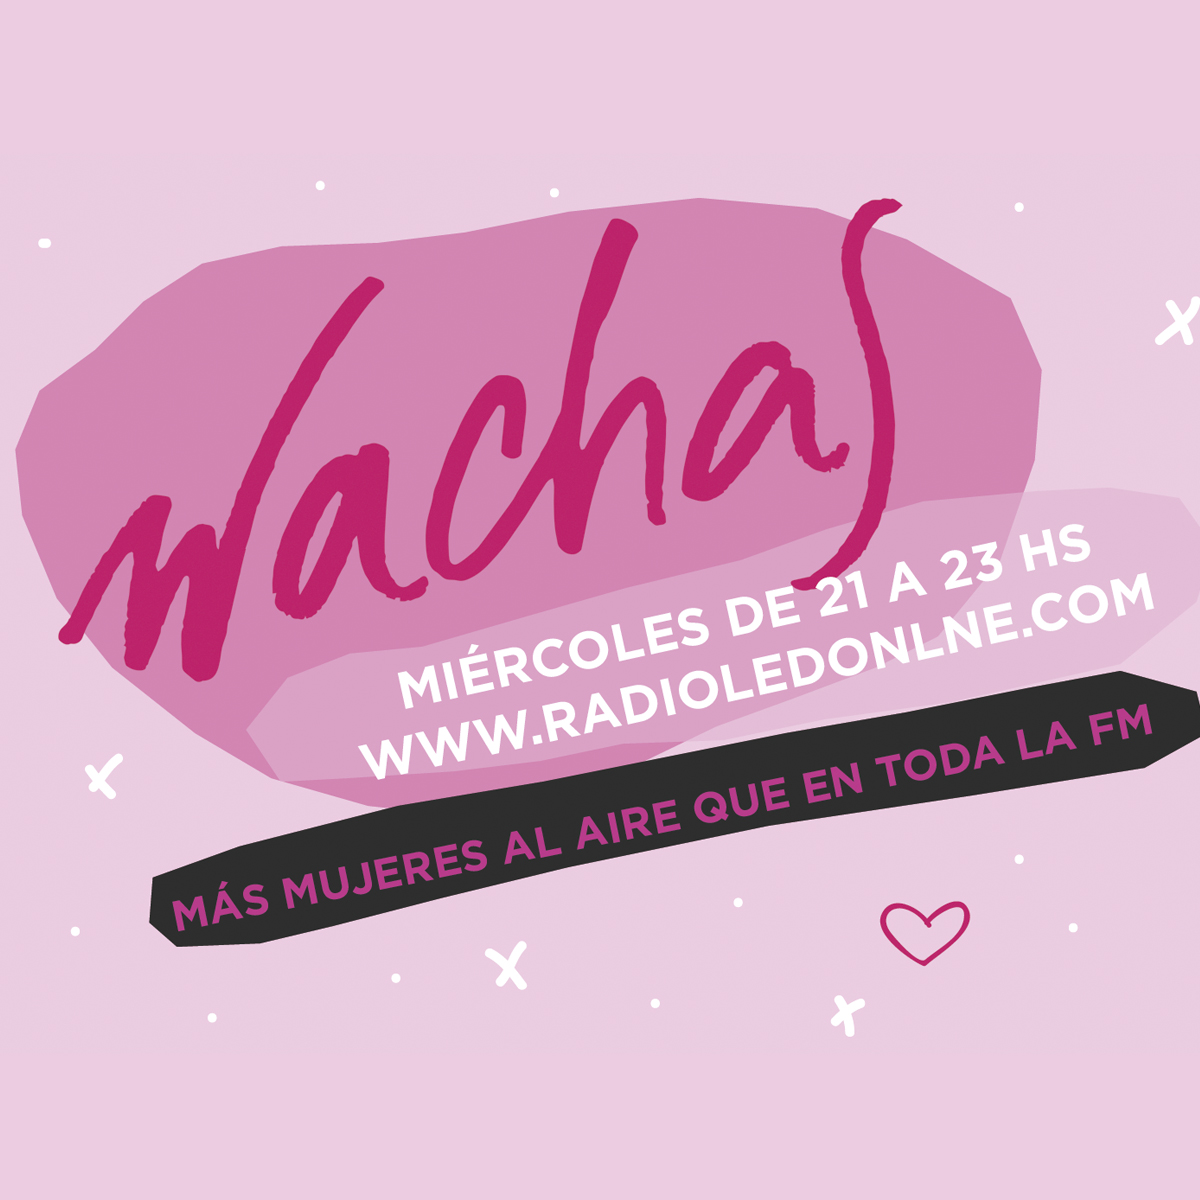 #Podcast Wachas | 14.06: @Orianajuncotop, Jaz Pimentel en vivo, jugamos al #FabiánGianola y más!